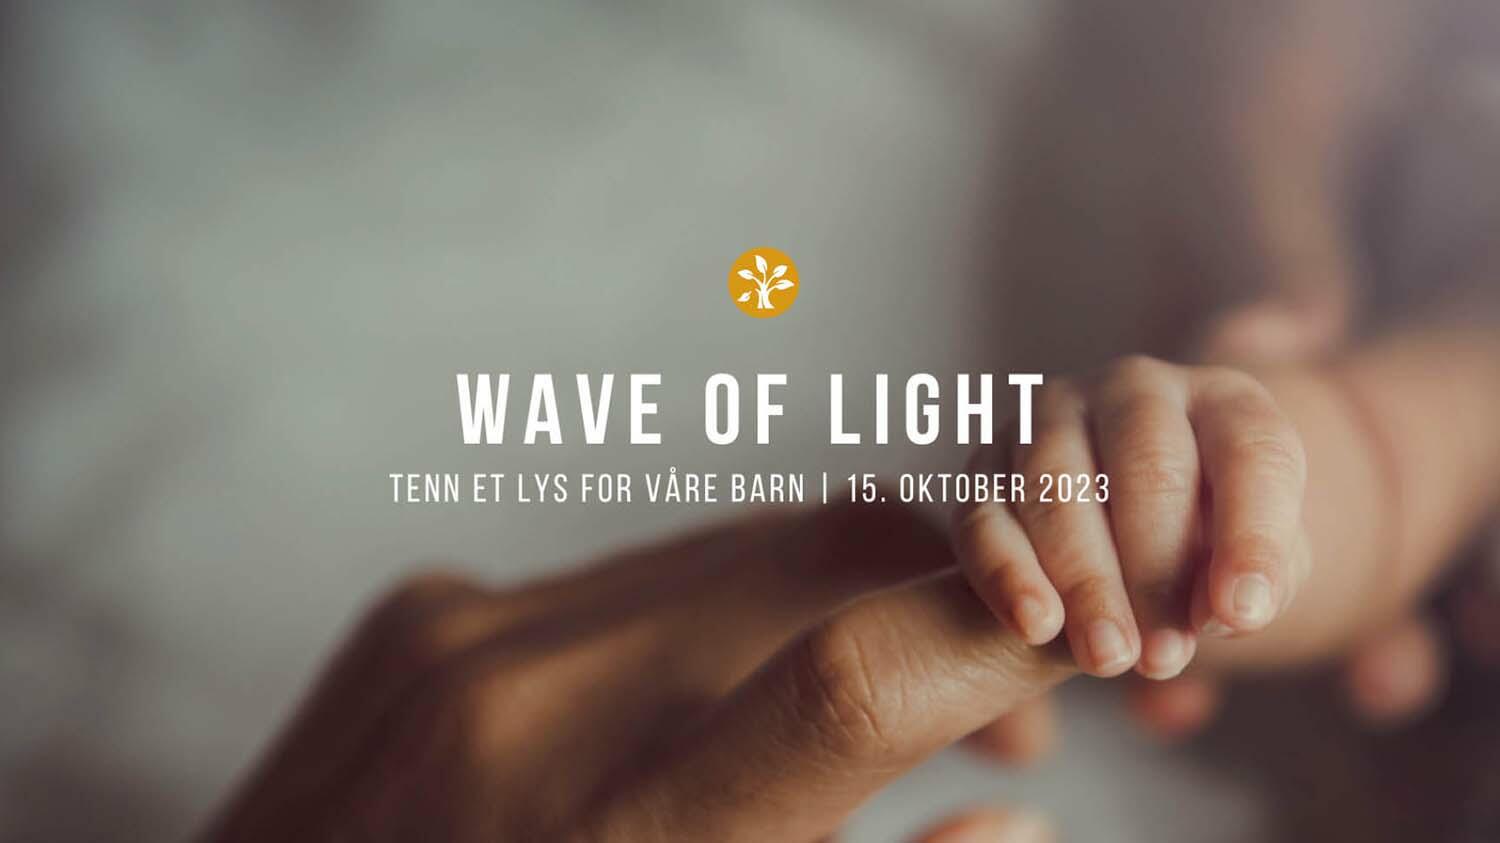 Bilde av barnehånd som griper rundt en voksens finger, med tekst: Wave of Light. Tenn et lys for våre barn - 15. oktober 2023